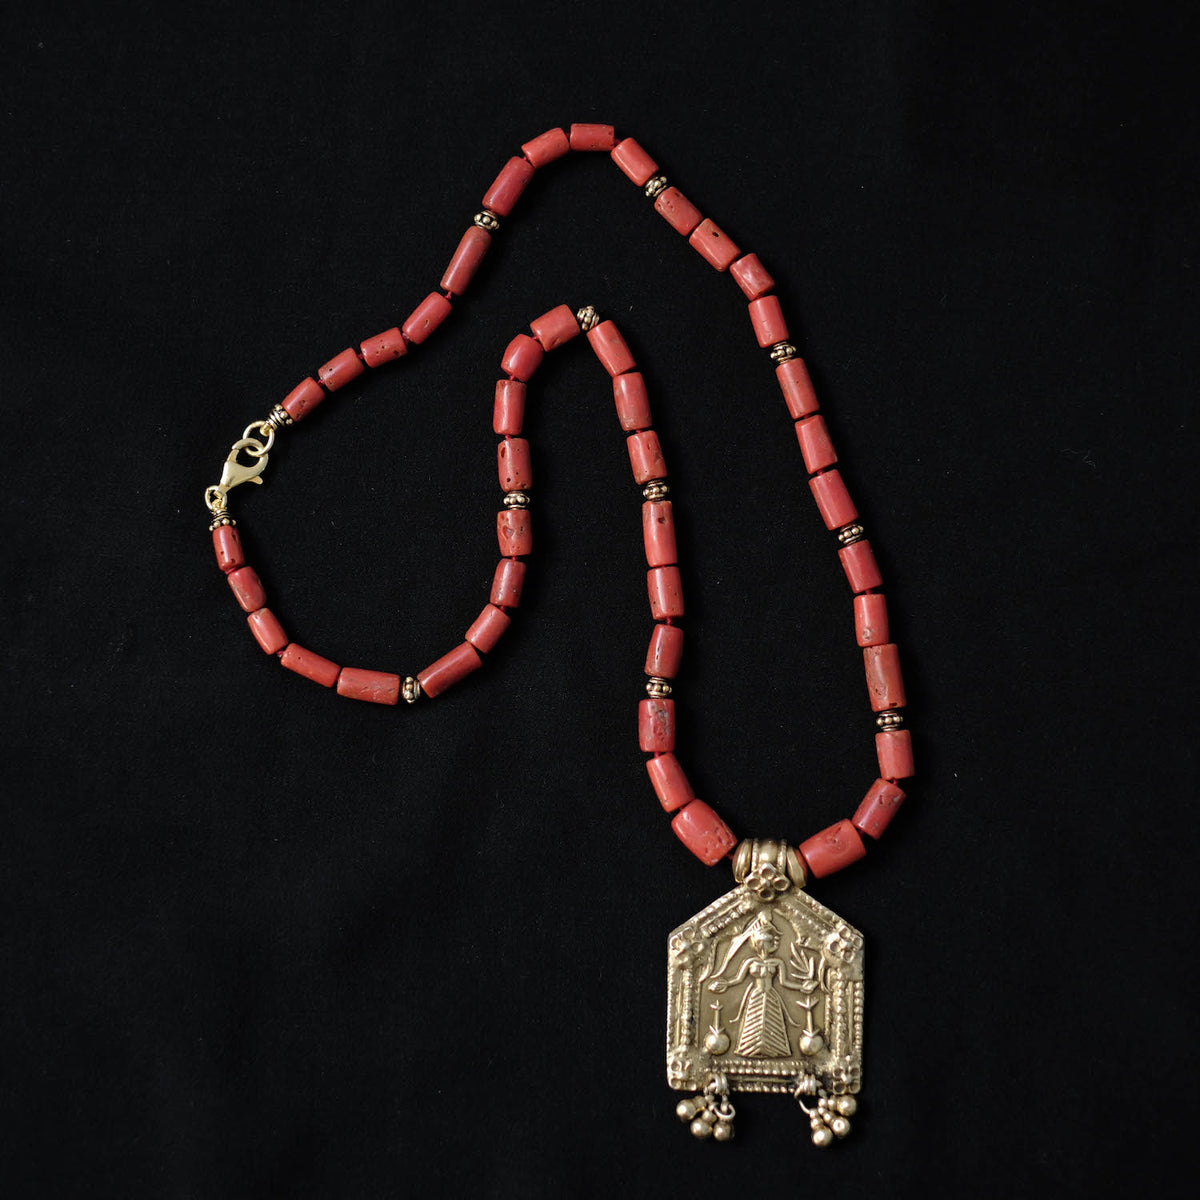 Collar con antiguo amuleto de plata dorada representando a una diosa hindú, engarzado con coral, piezas de plata dorada y cierre contemporáneo.&nbsp; Pieza única, diseñada por Lula Máiz. Longitud 52 cm. Peso 45 g. Collar de coral. Collar con amuleto antiguo. By Lula Máiz.